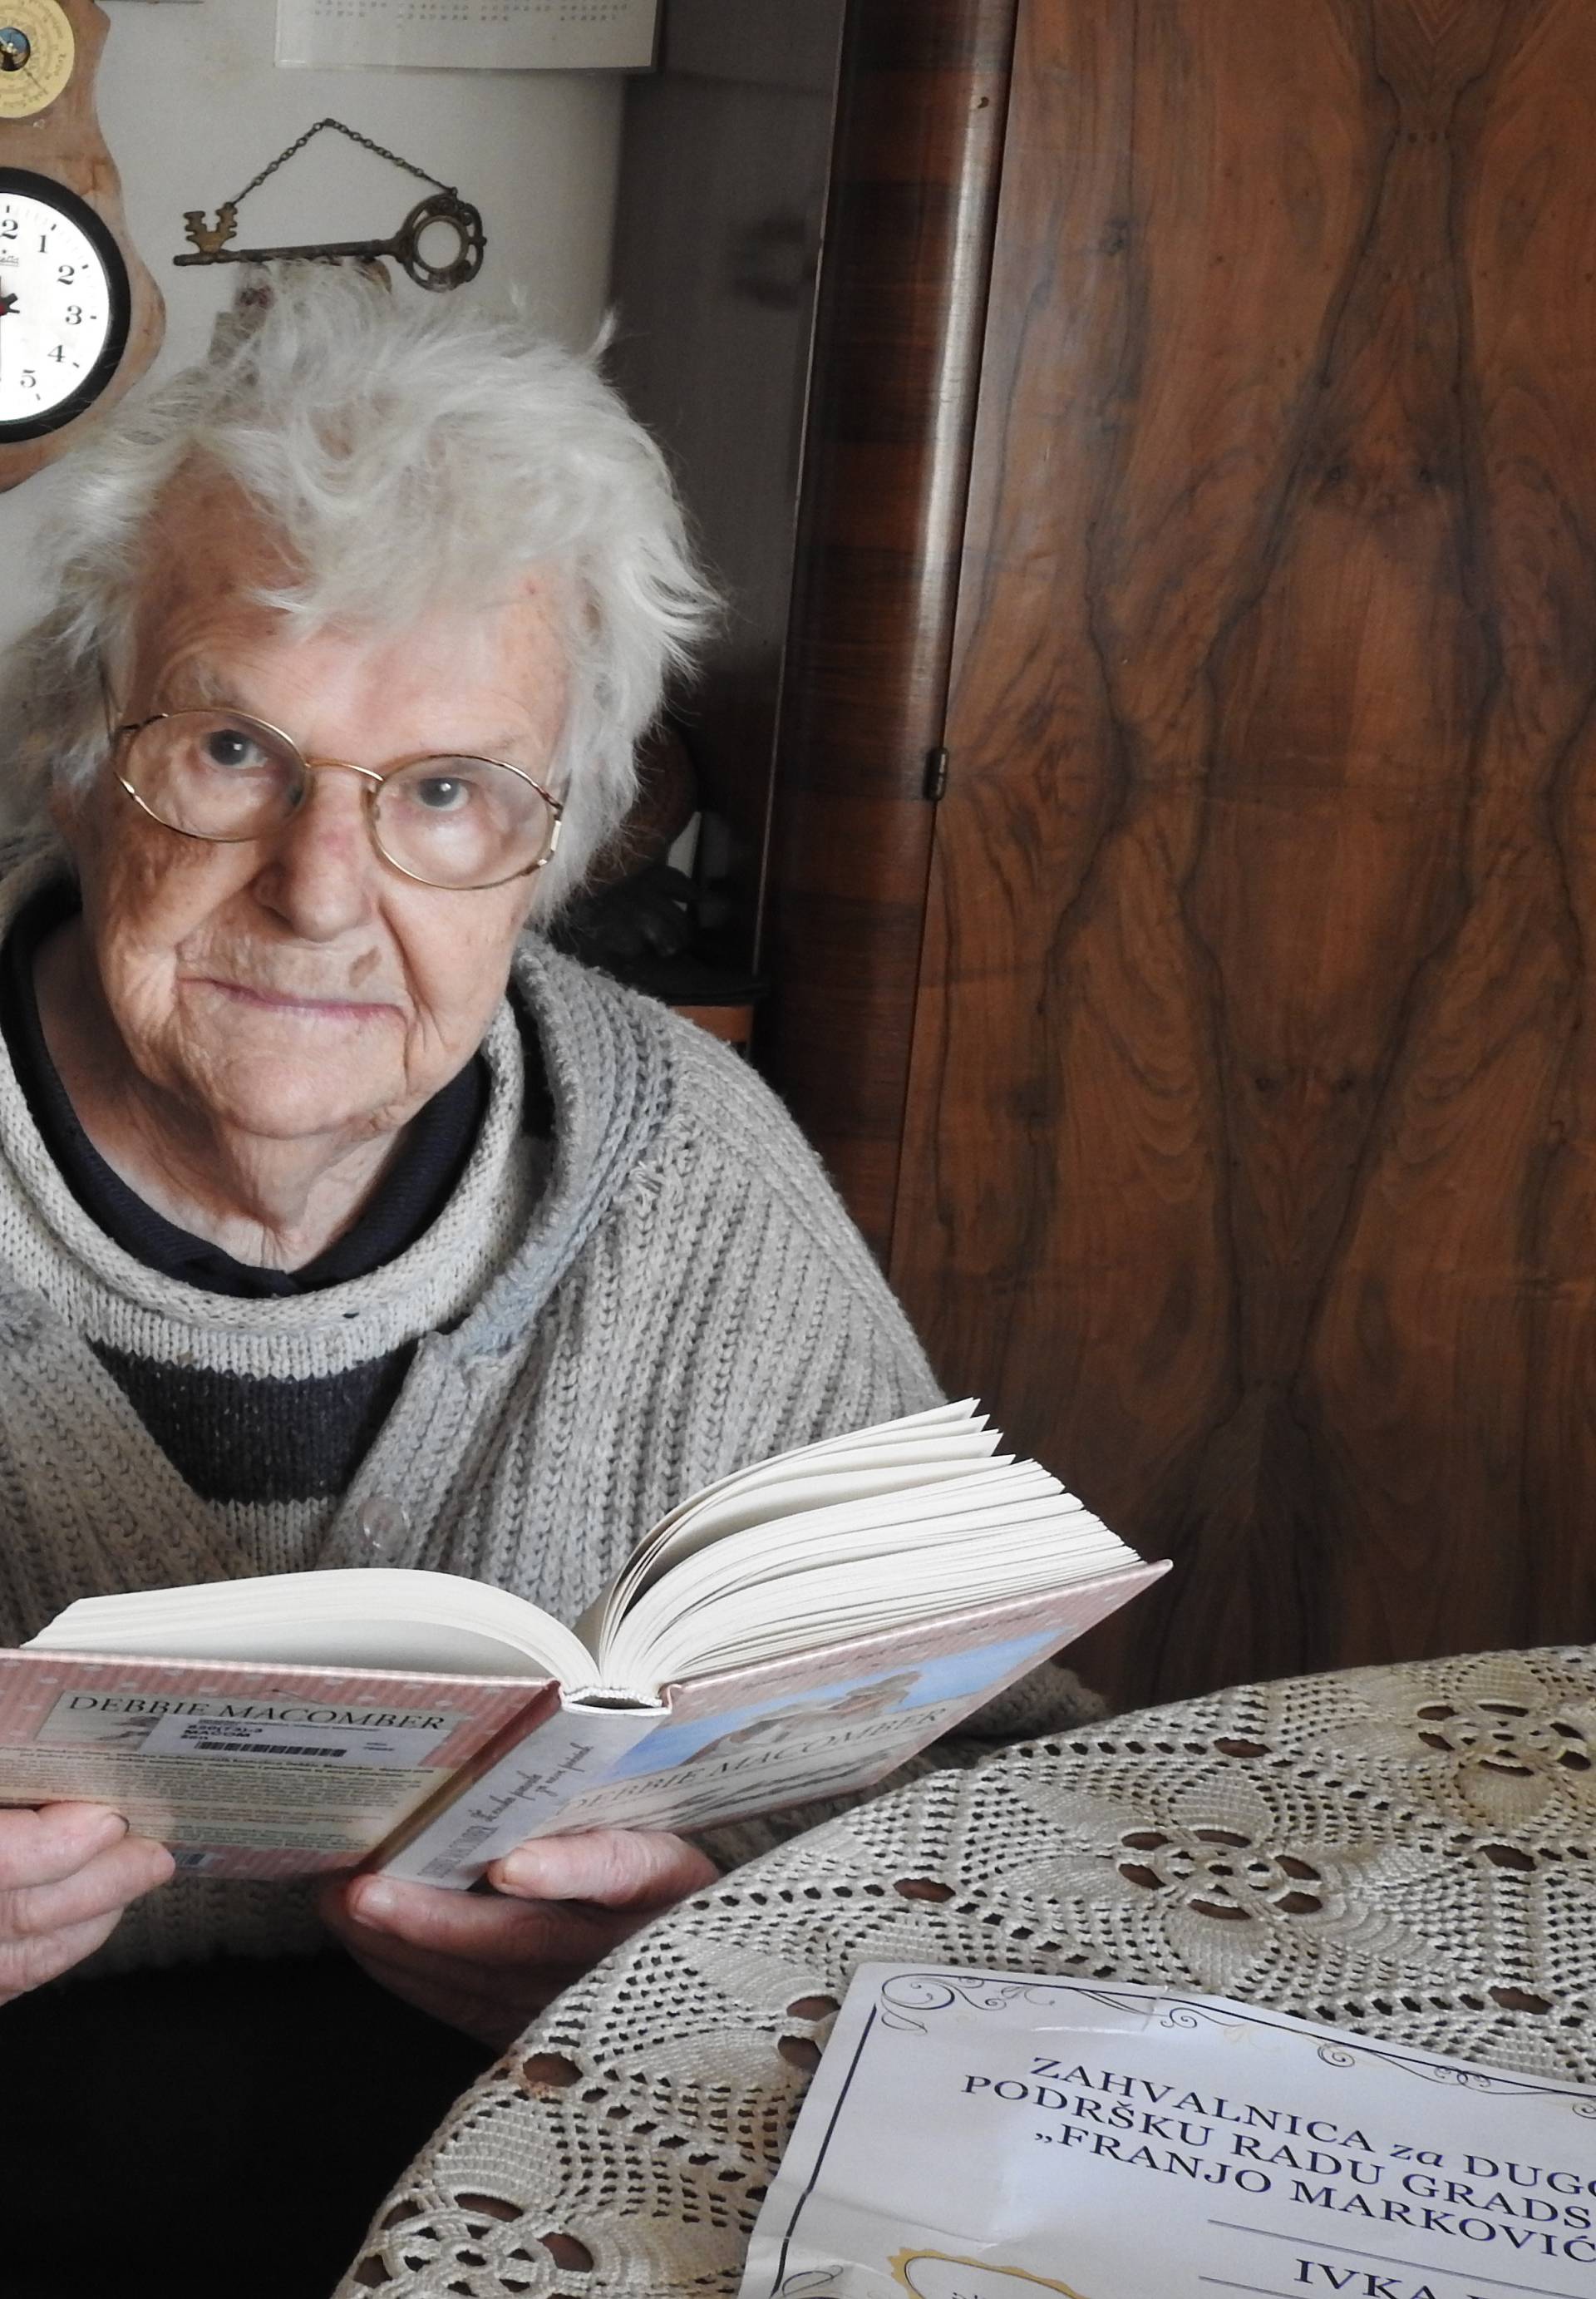 Baka Ivka i sa 92 godine kaže da svaki tjedan pročita knjigu